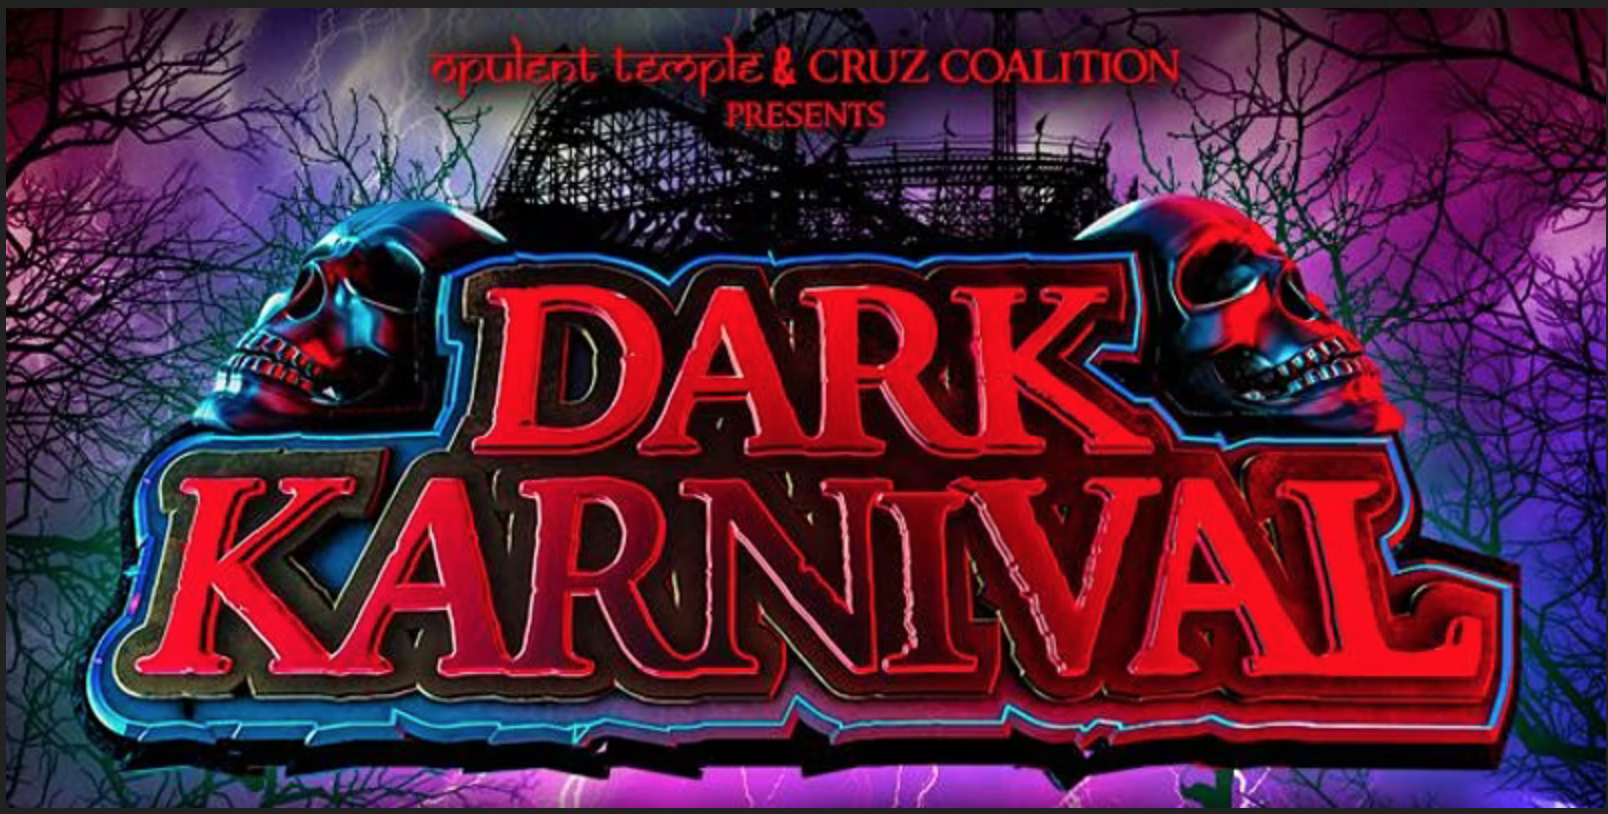 Opulent Temple & Cruz Coalition Halloween in LA: Dark Karnival 2017